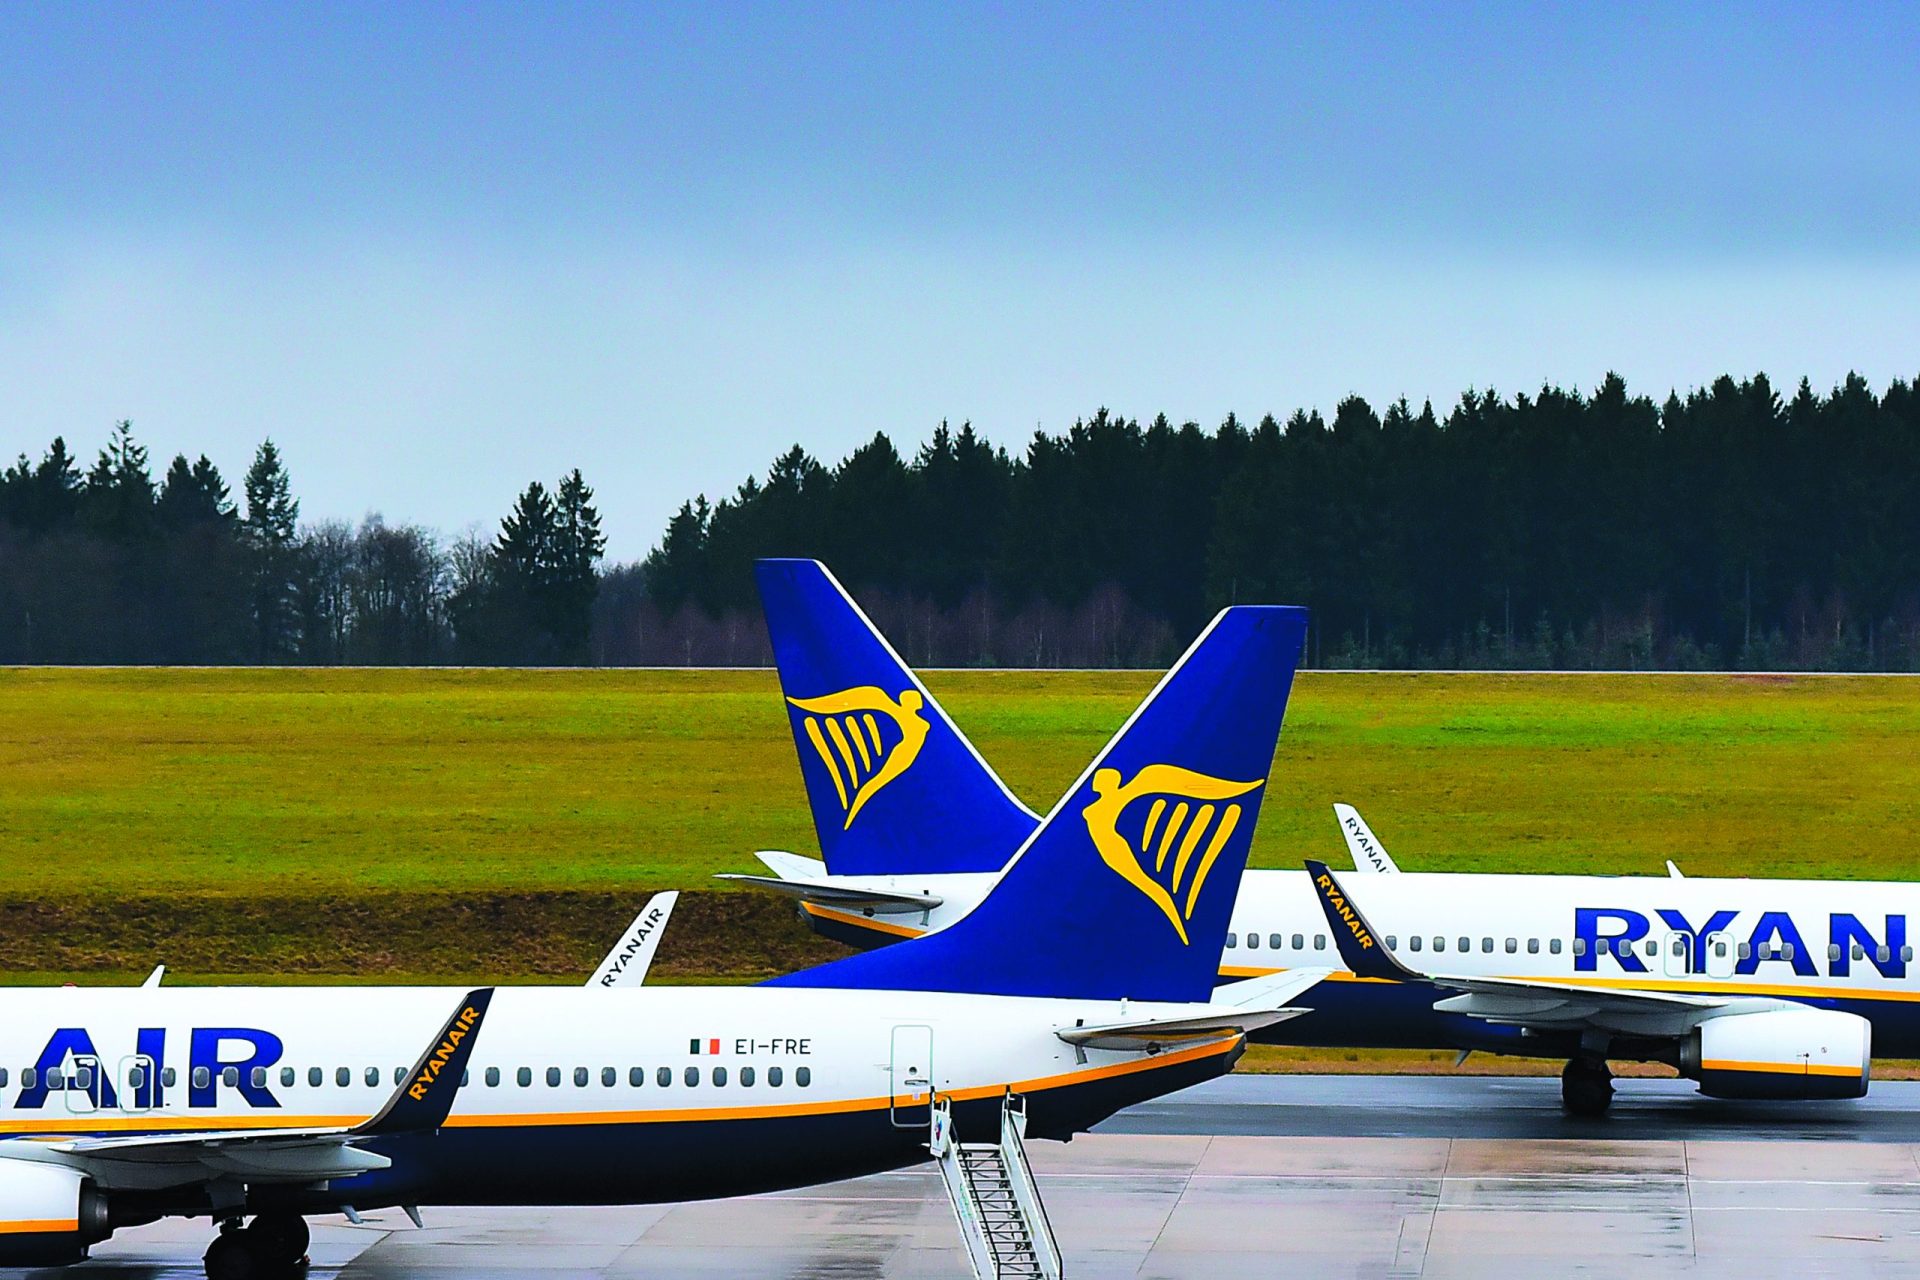 Ryanair. Trabalhadores esperam que amanhã a &#8220;adesão seja maior&#8221;